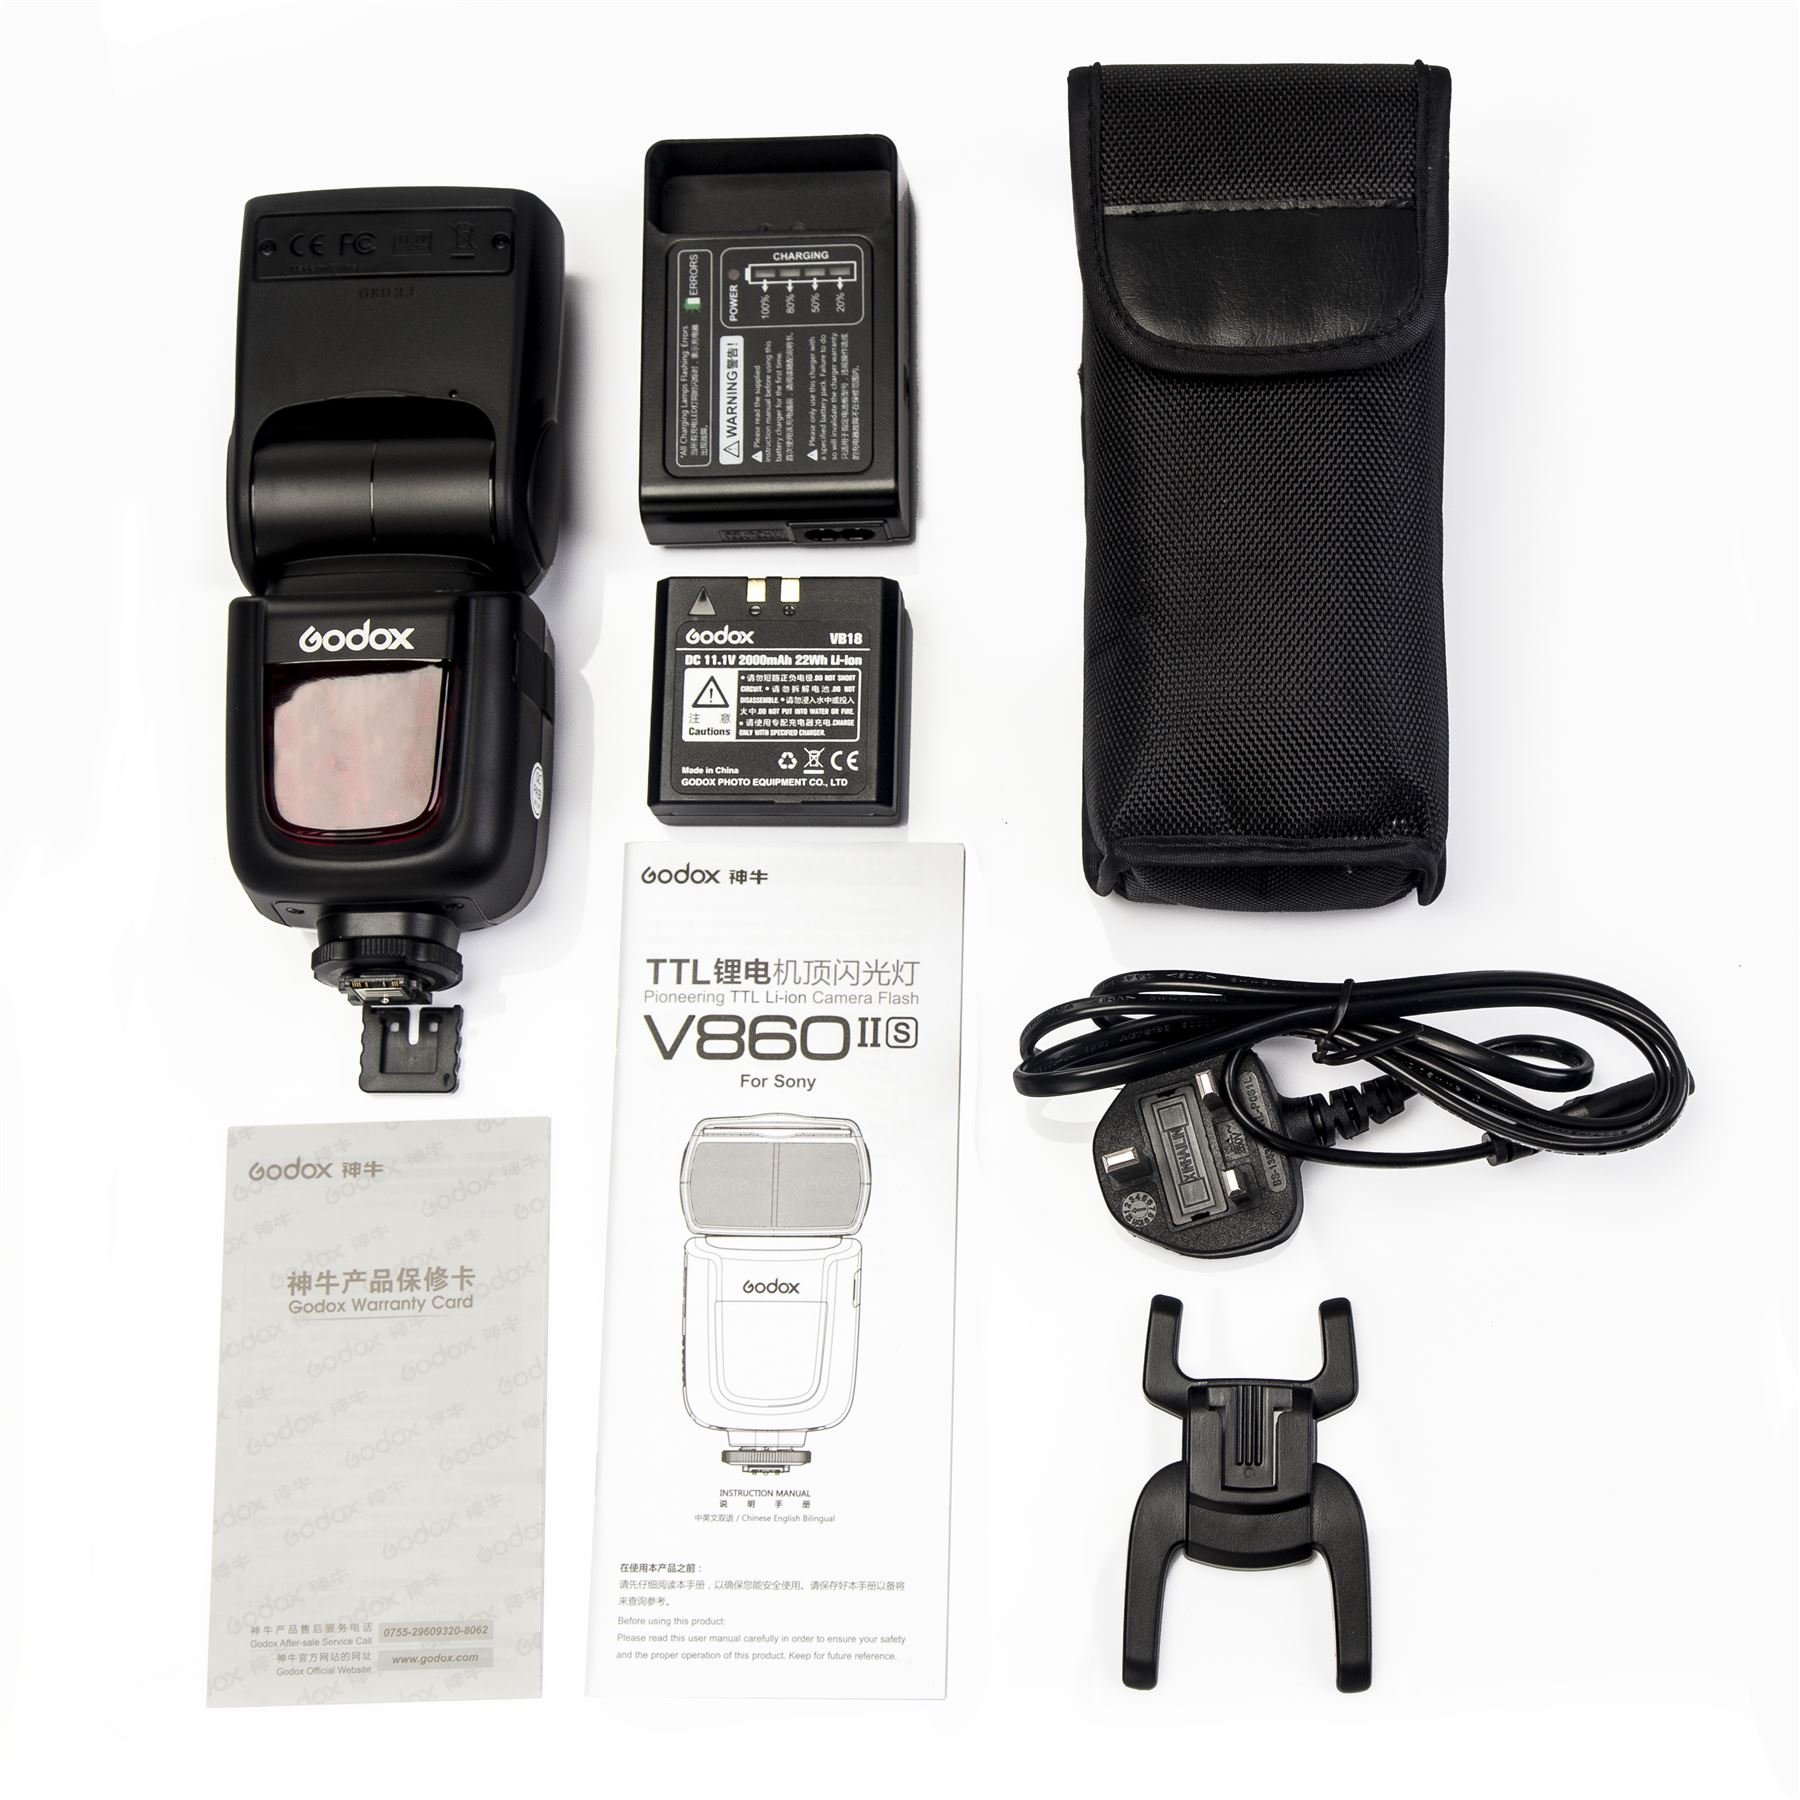 GODOX V860II-S Blitzgerät für Sony DSLR-Kamera V860IIS Kit schwarz